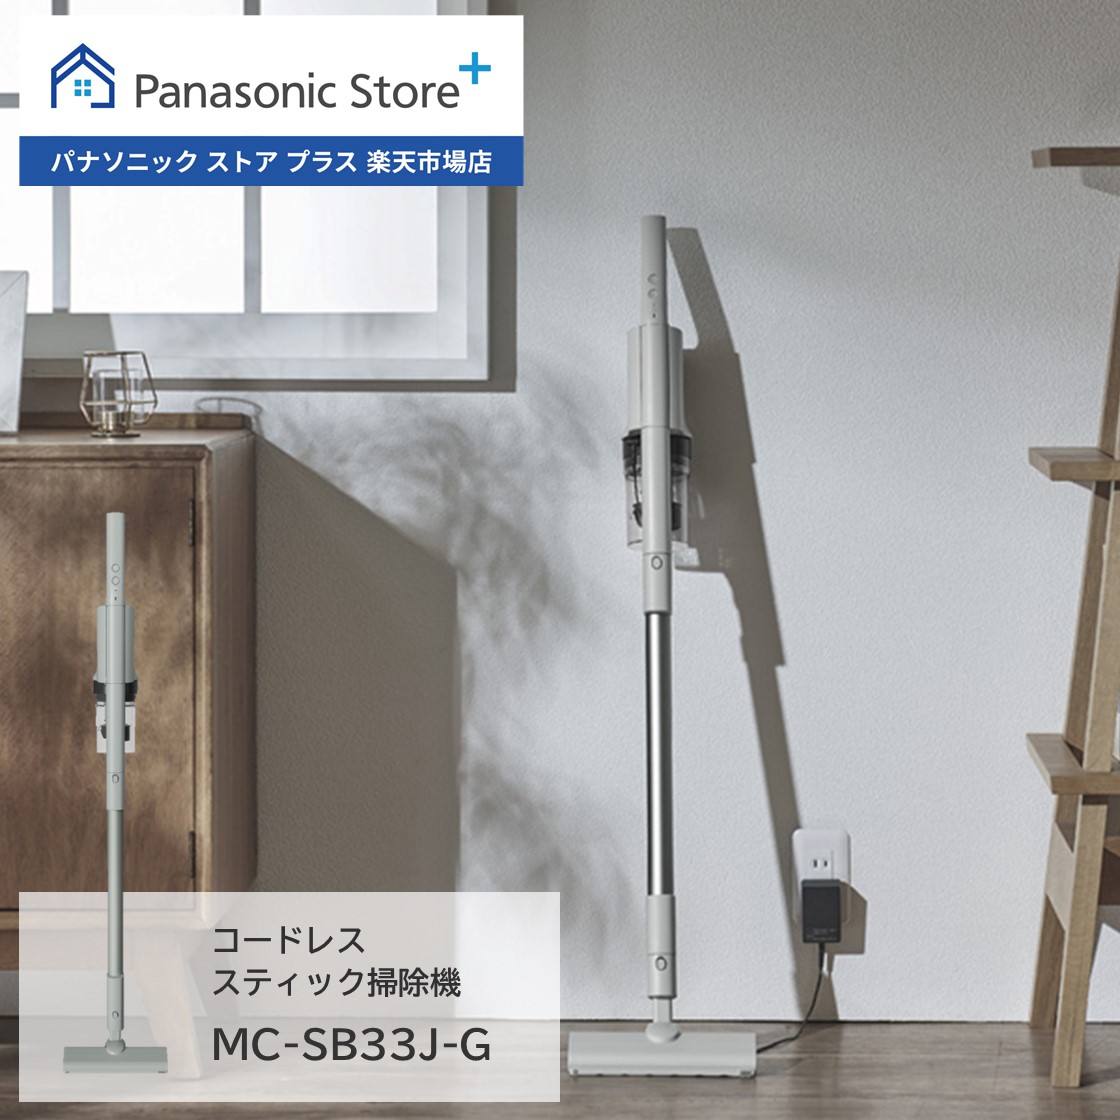 【楽天市場】【公式店】パナソニック Panasonic コードレス